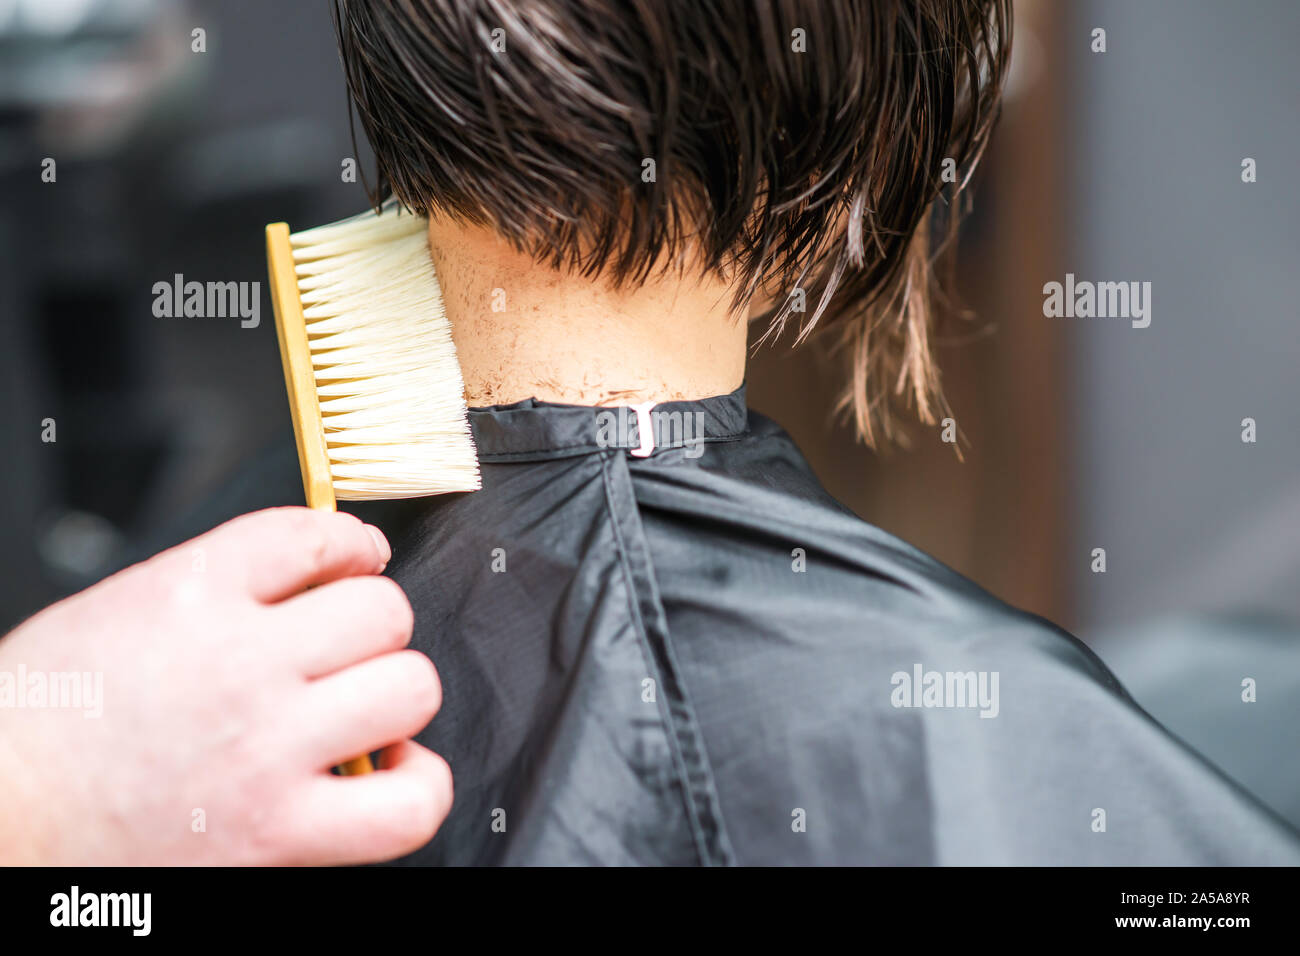 Parrucchiere scuote i capelli tagliati dal collo della donna al salone di parrucchiere. Barbiere uomo è la pulizia i capelli tagliati dal collo della donna nel salone di bellezza. Taglio di capelli al salone. Foto Stock